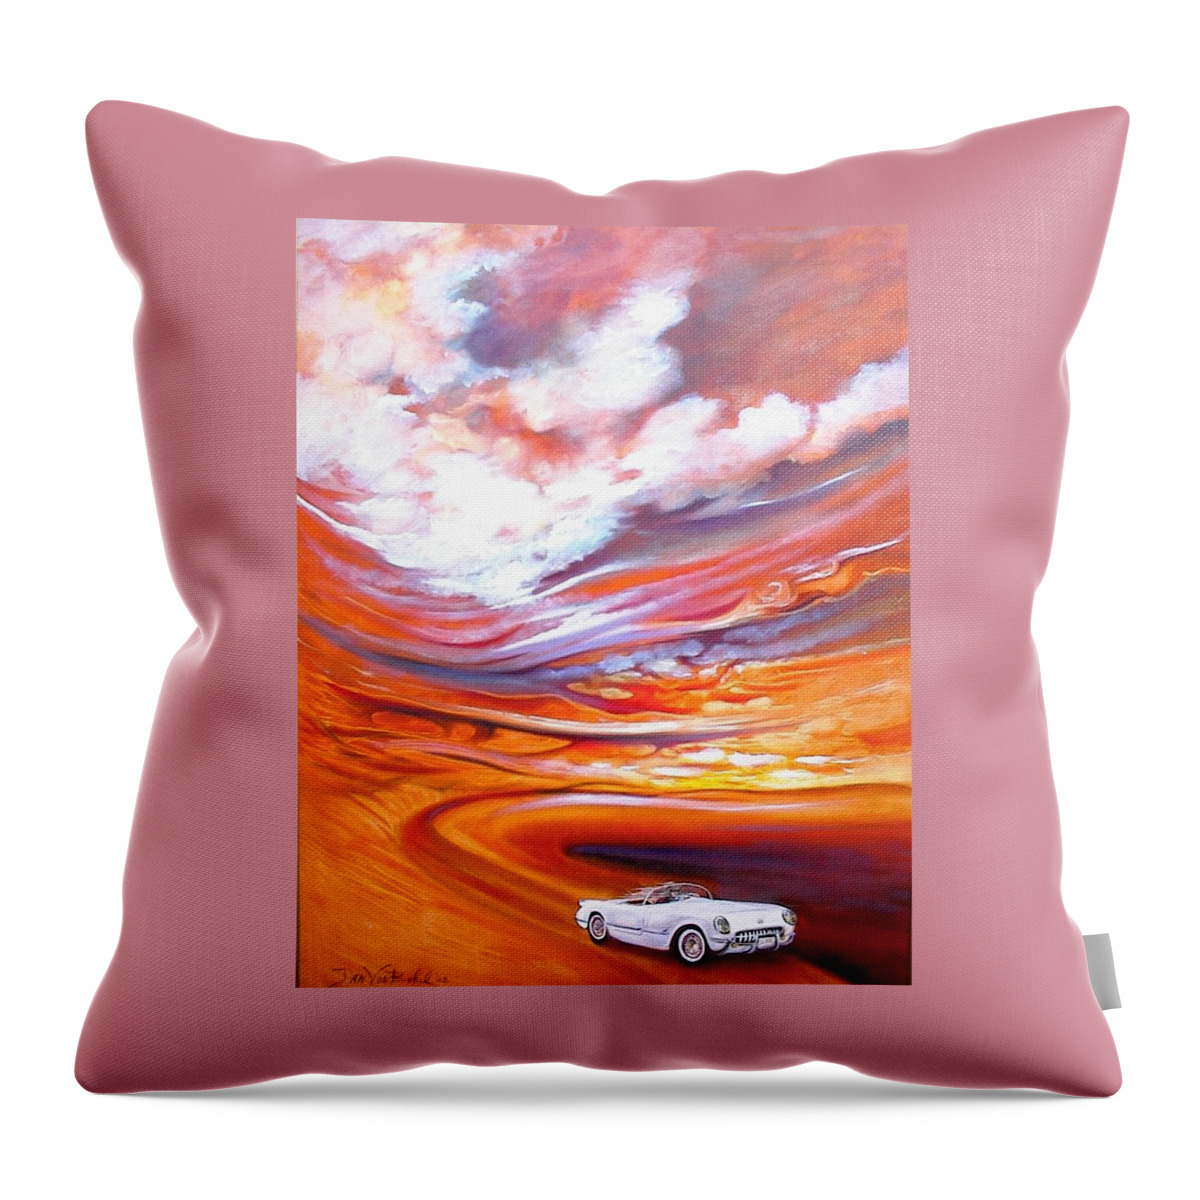 Corvette Art Landscape Throw Pillow featuring the painting Corvette Heaven by Jan VonBokel